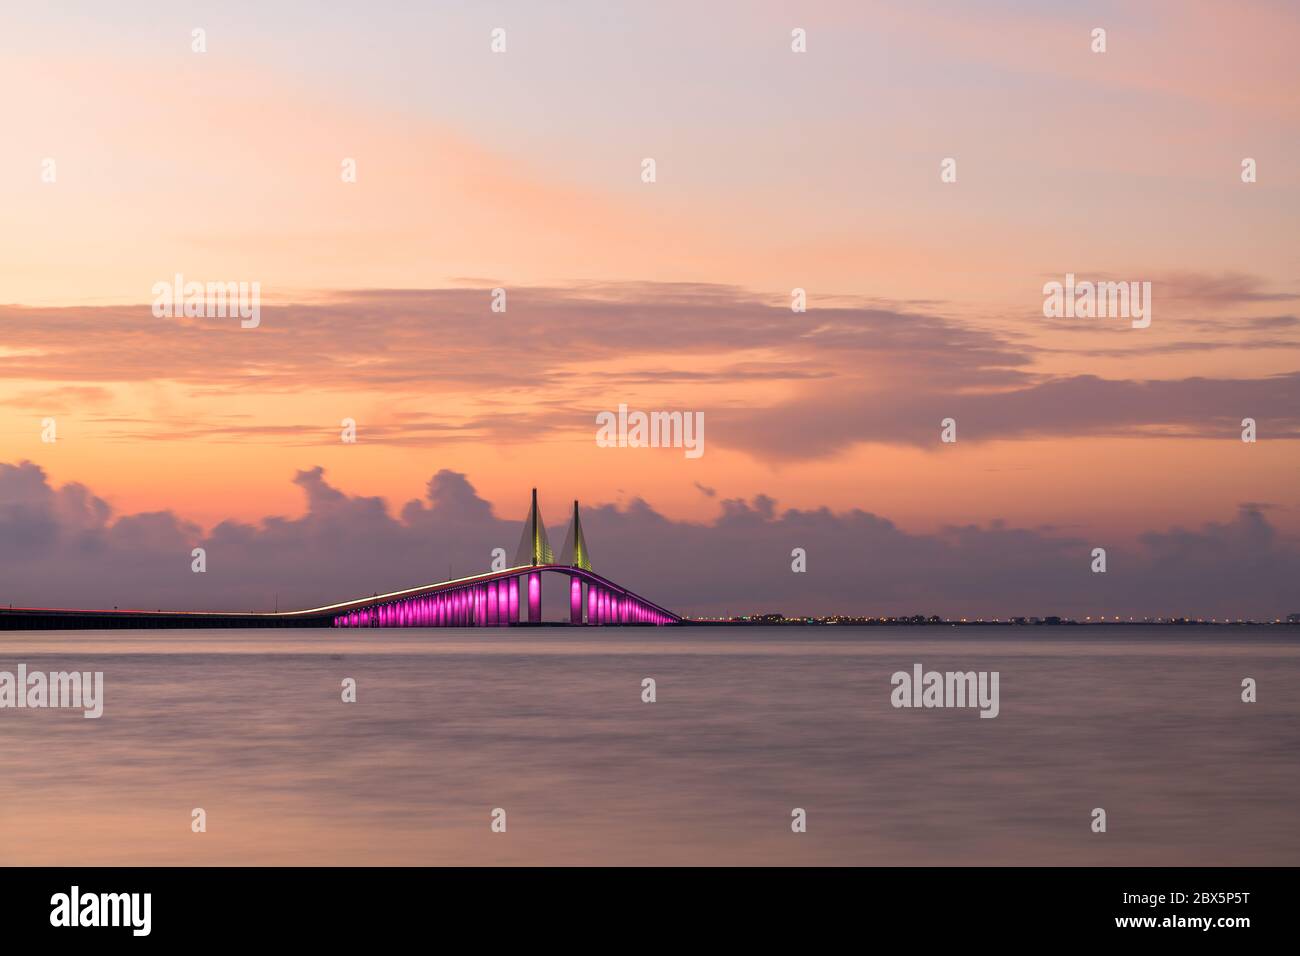 Pont Sunshine Skyway qui enjambe la baie de Tampa et relie Terra CEIA à Saint-Pétersbourg, Floride, États-Unis. Banque D'Images